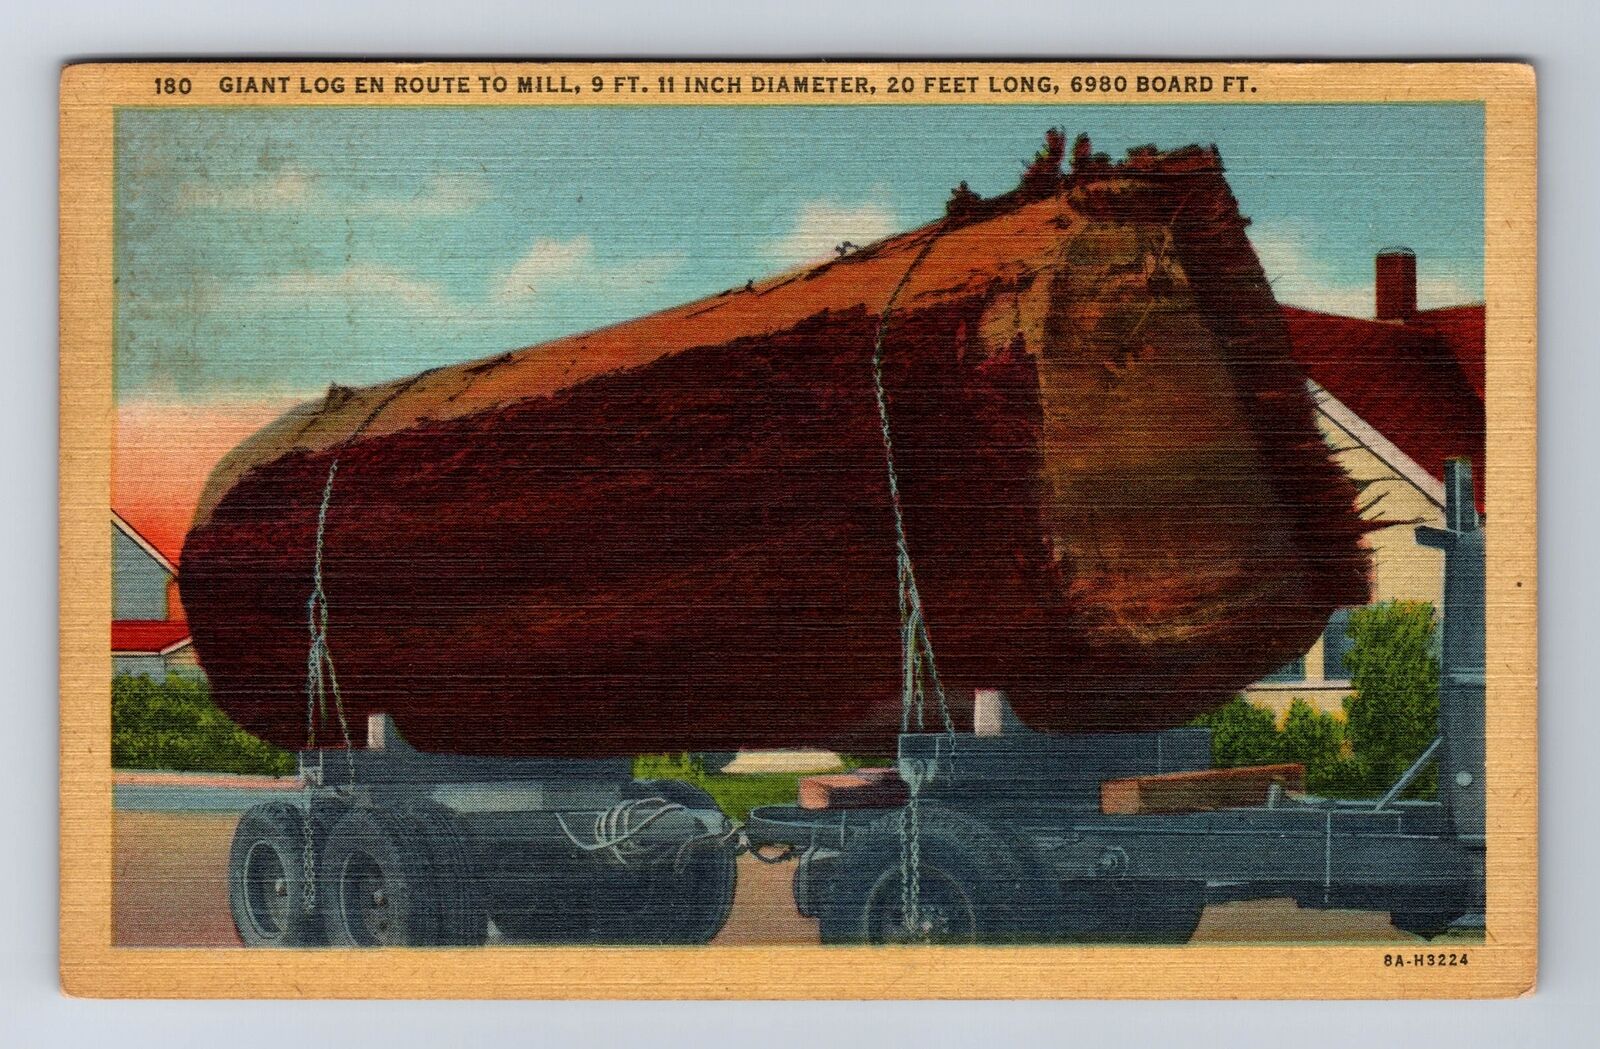 OR-Oregon, Giant Log En Route to Mill, Antique Vintage Souvenir History Postcard